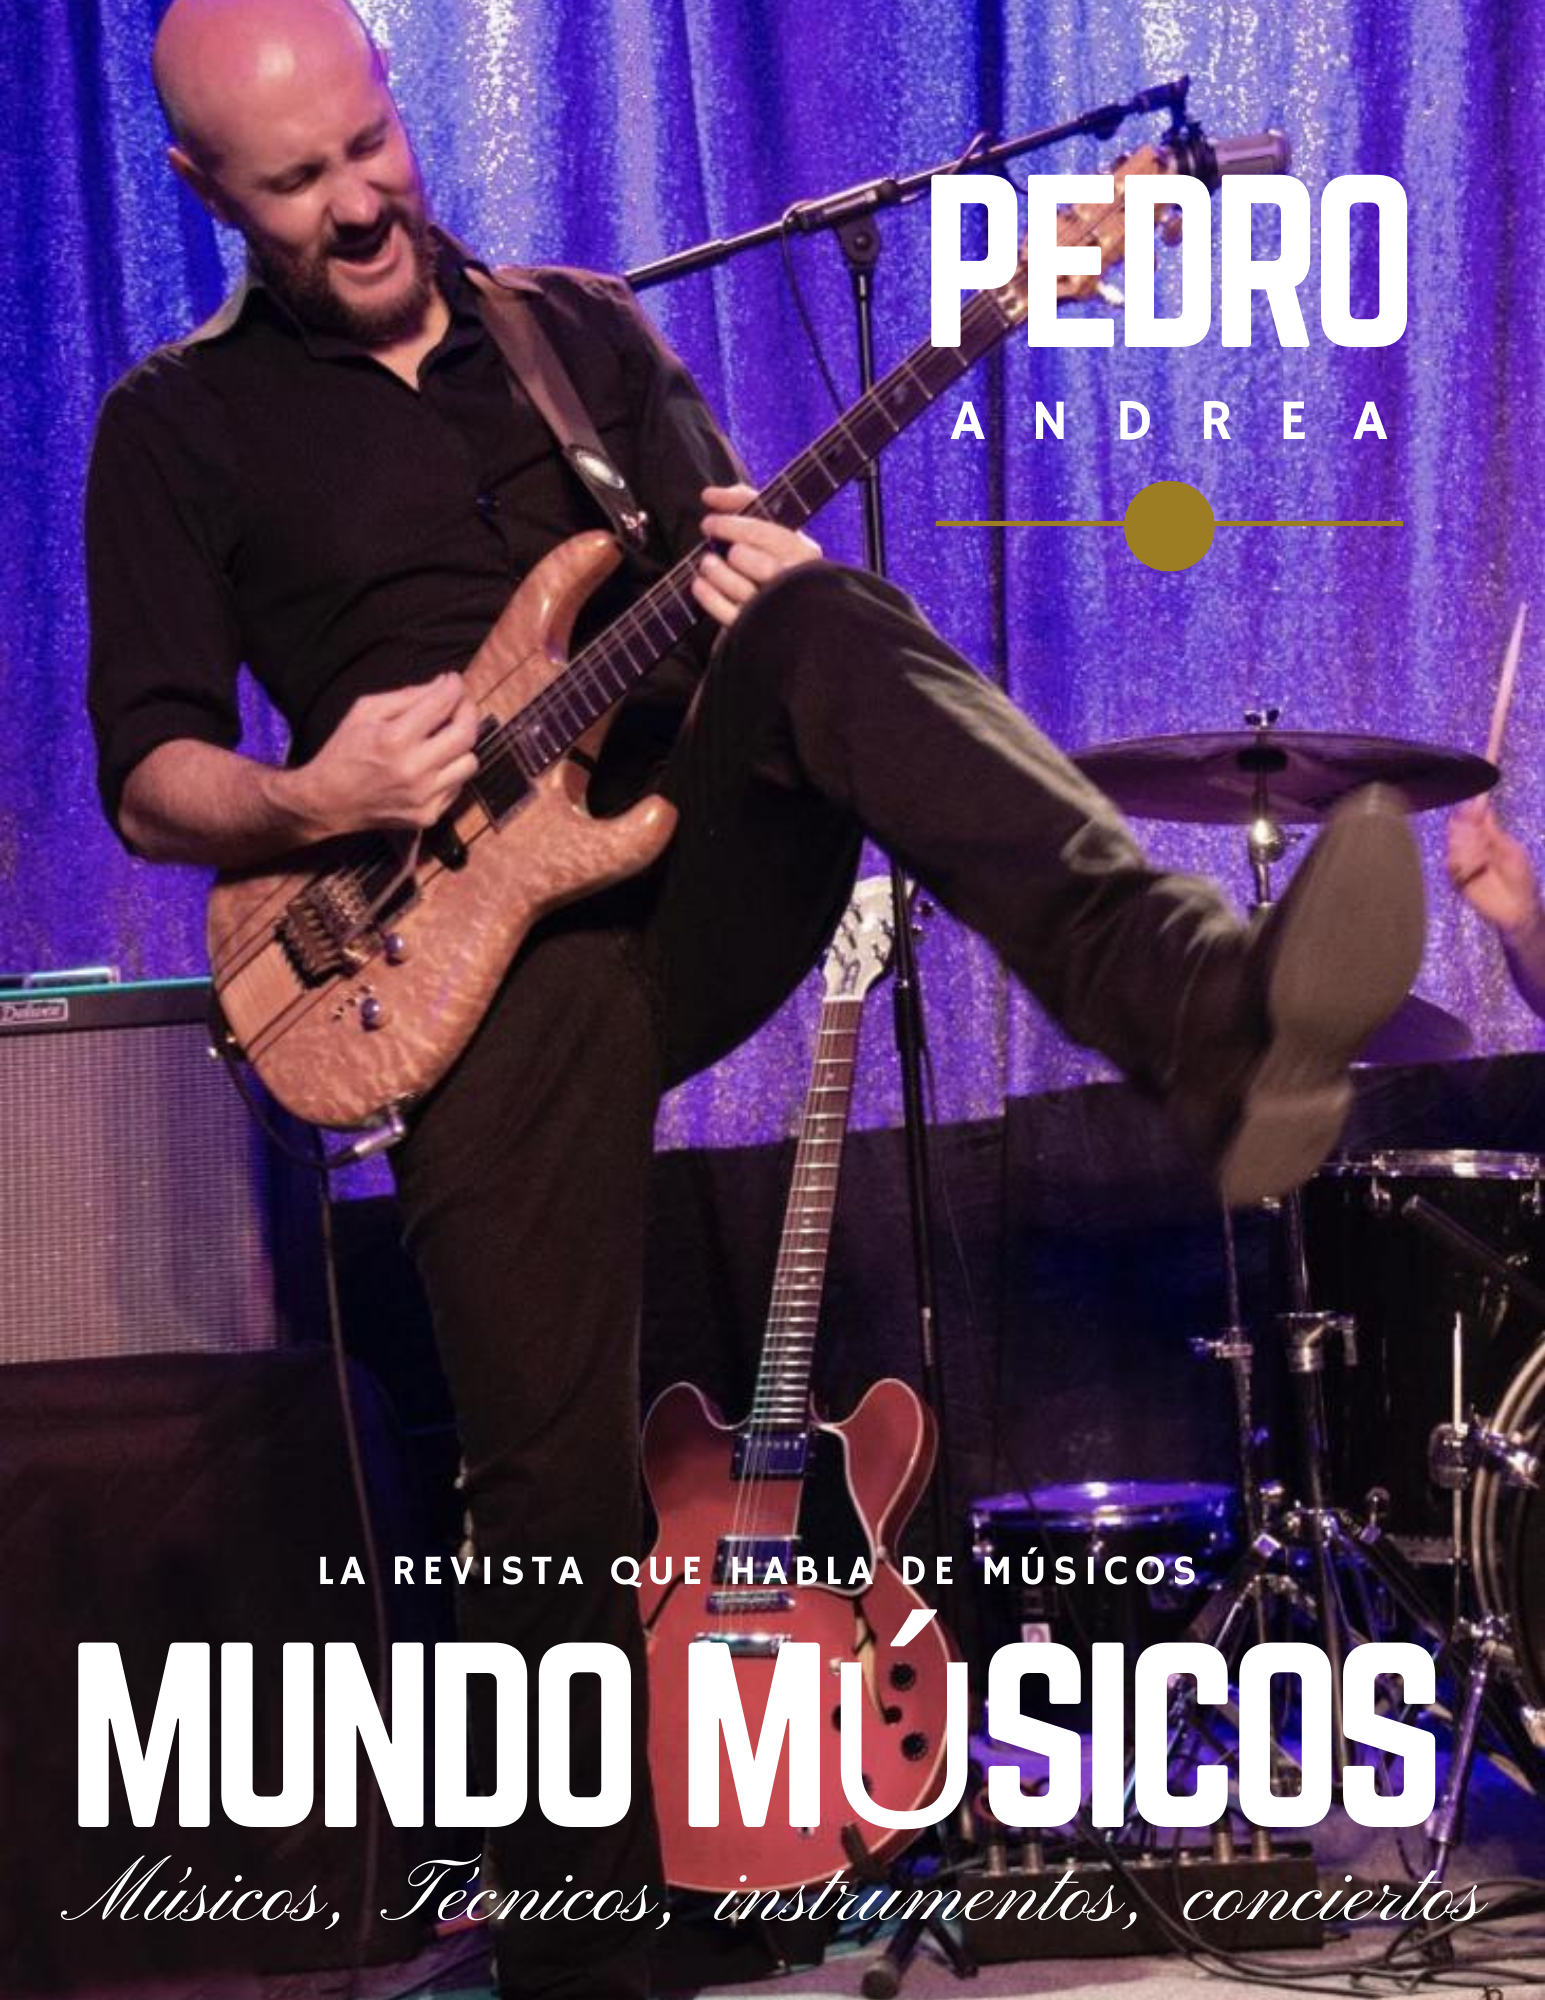 Pedro Andrea musico